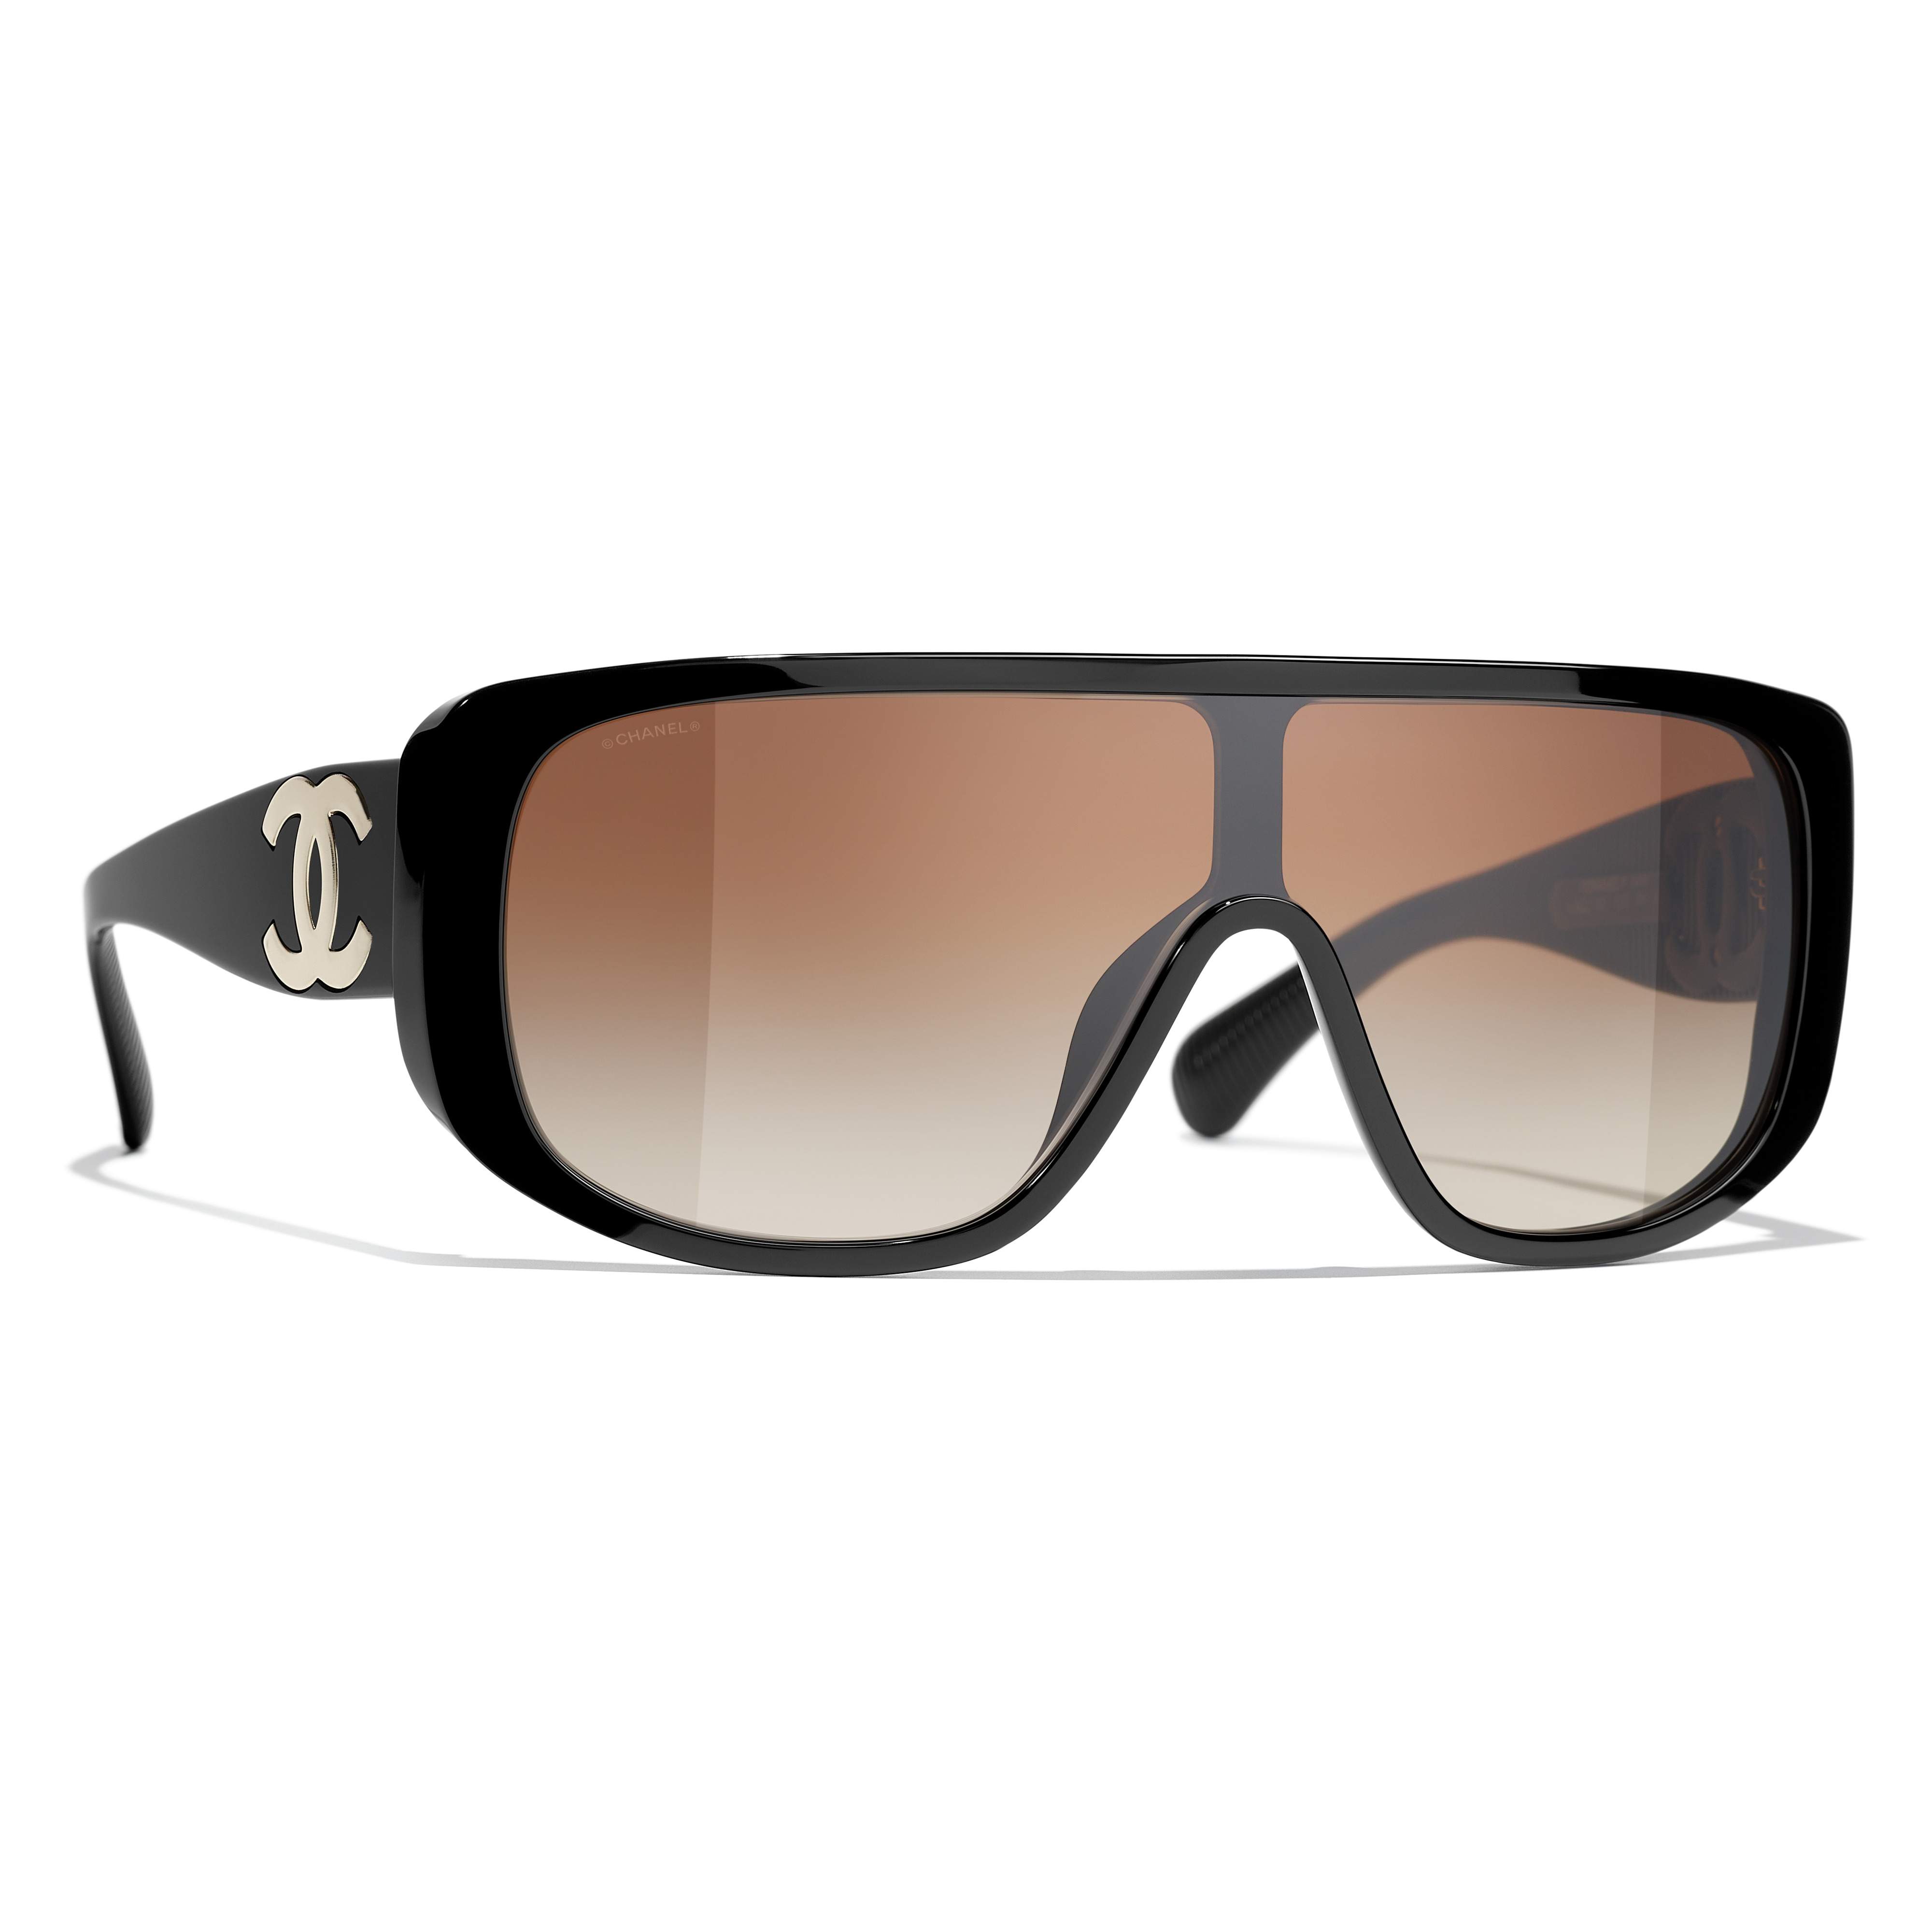 Chanel CC Sunglasses